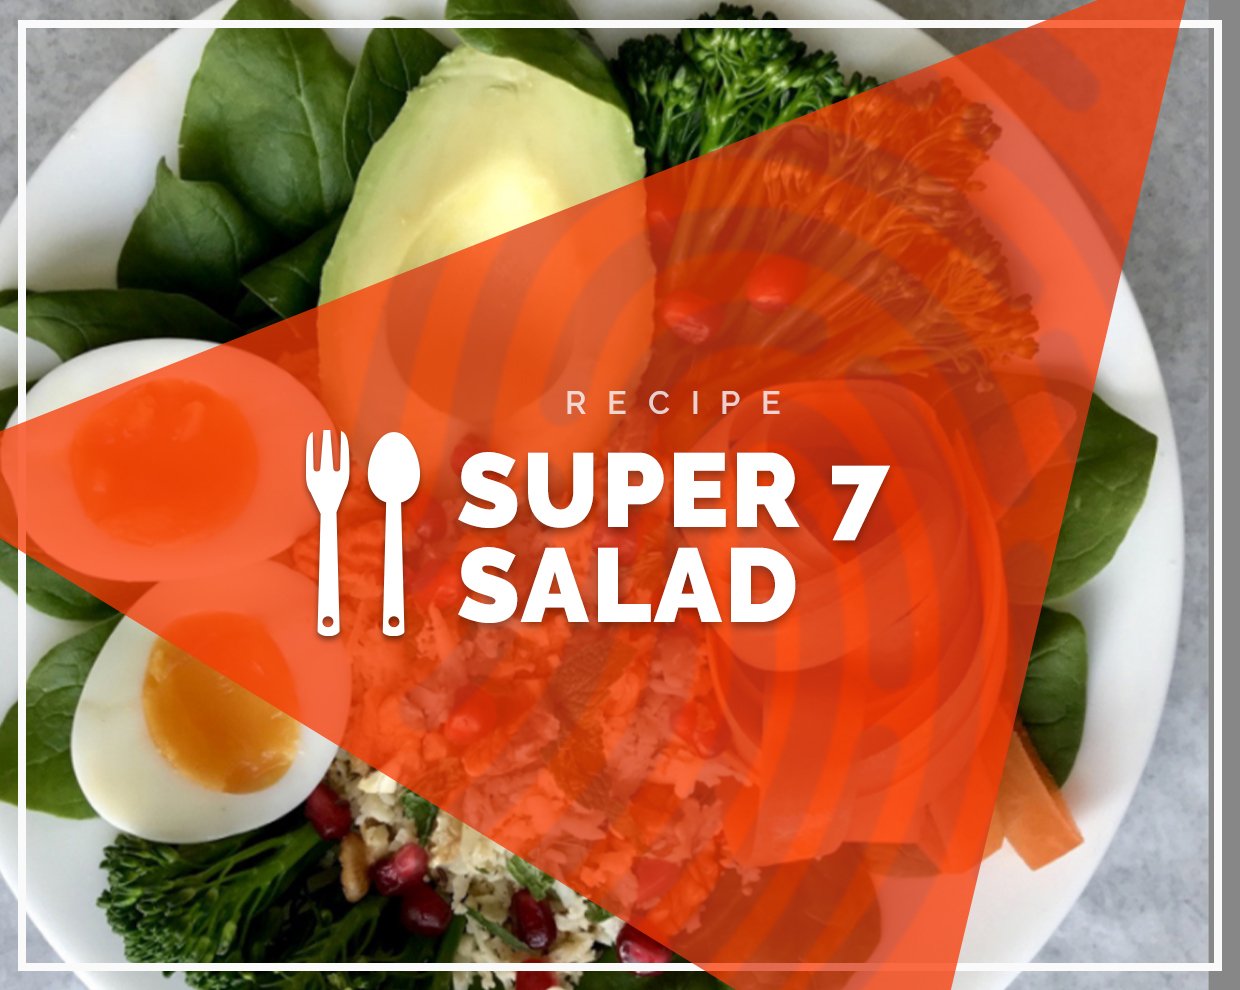 Super 7 Salad 